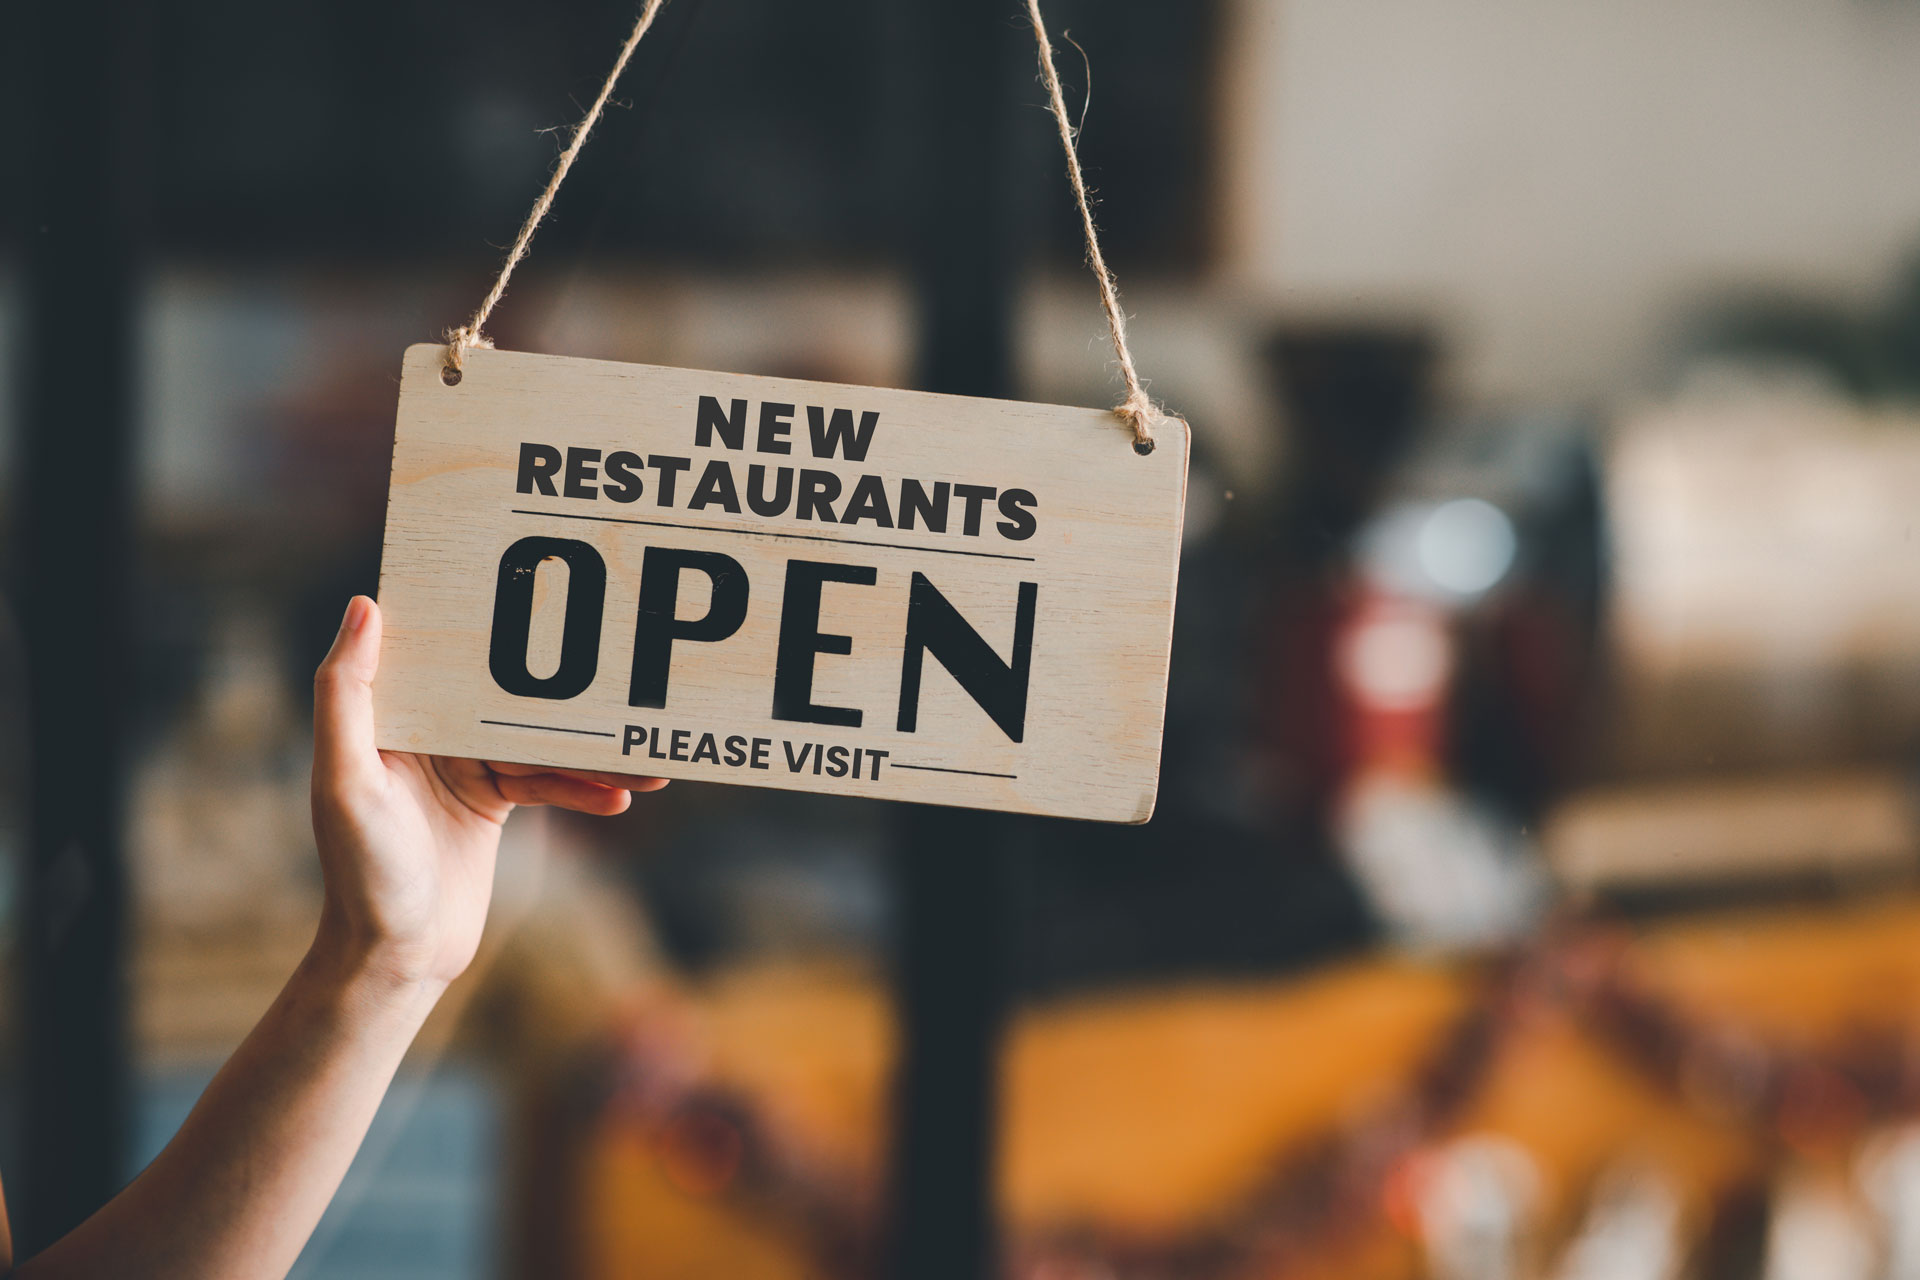 New Restaurants Open sign on door